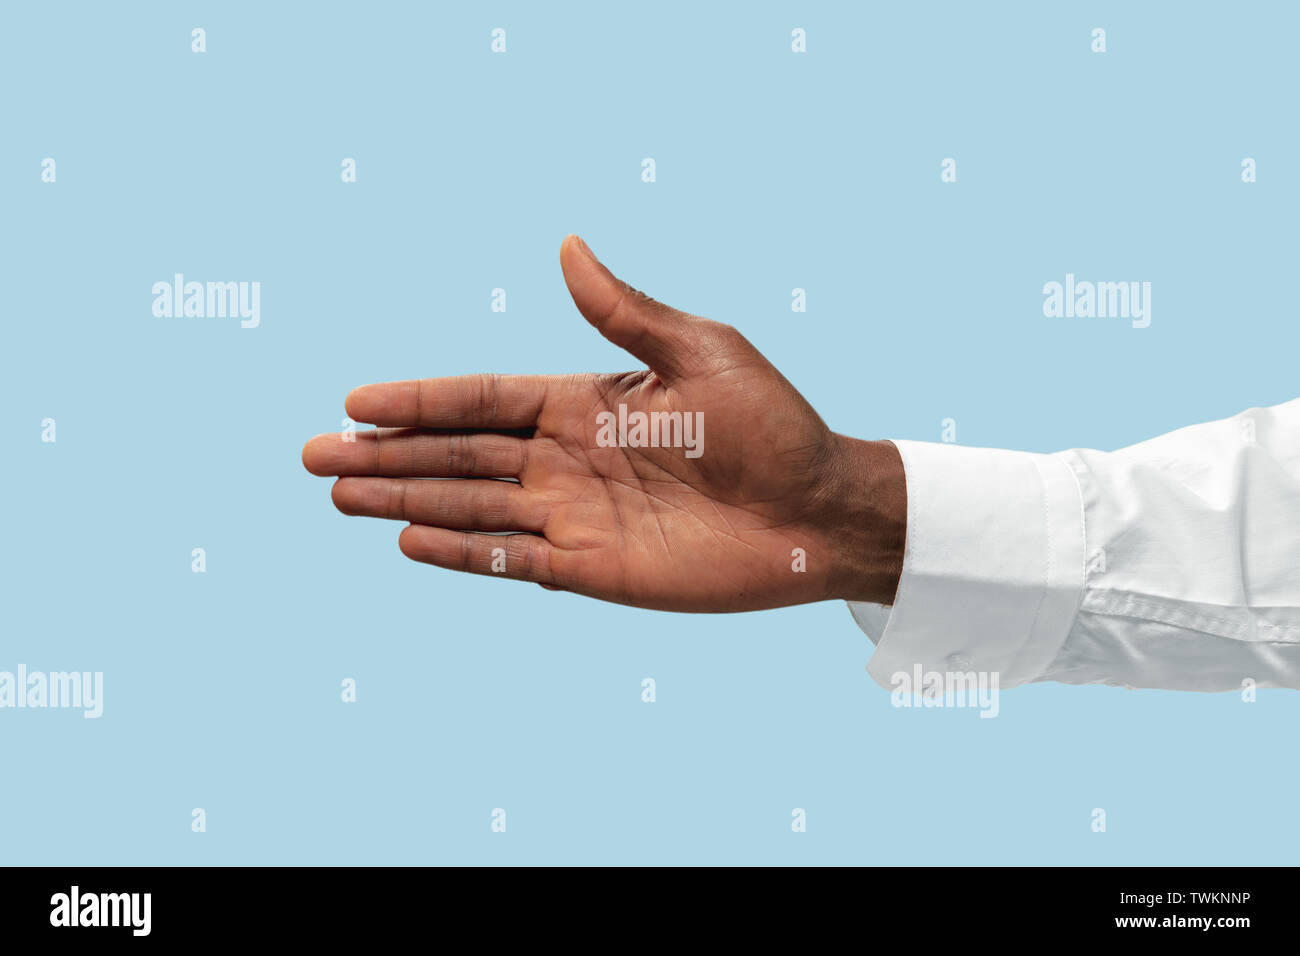 Männliche Hand in weißem Hemd, eine Geste der Einladung oder Zeigen auf Blau studio Hintergrund isoliert. Konzept der Business, Büro, arbeiten. Negative Platz Ihr Text oder Bild einzufügen. Stockfoto